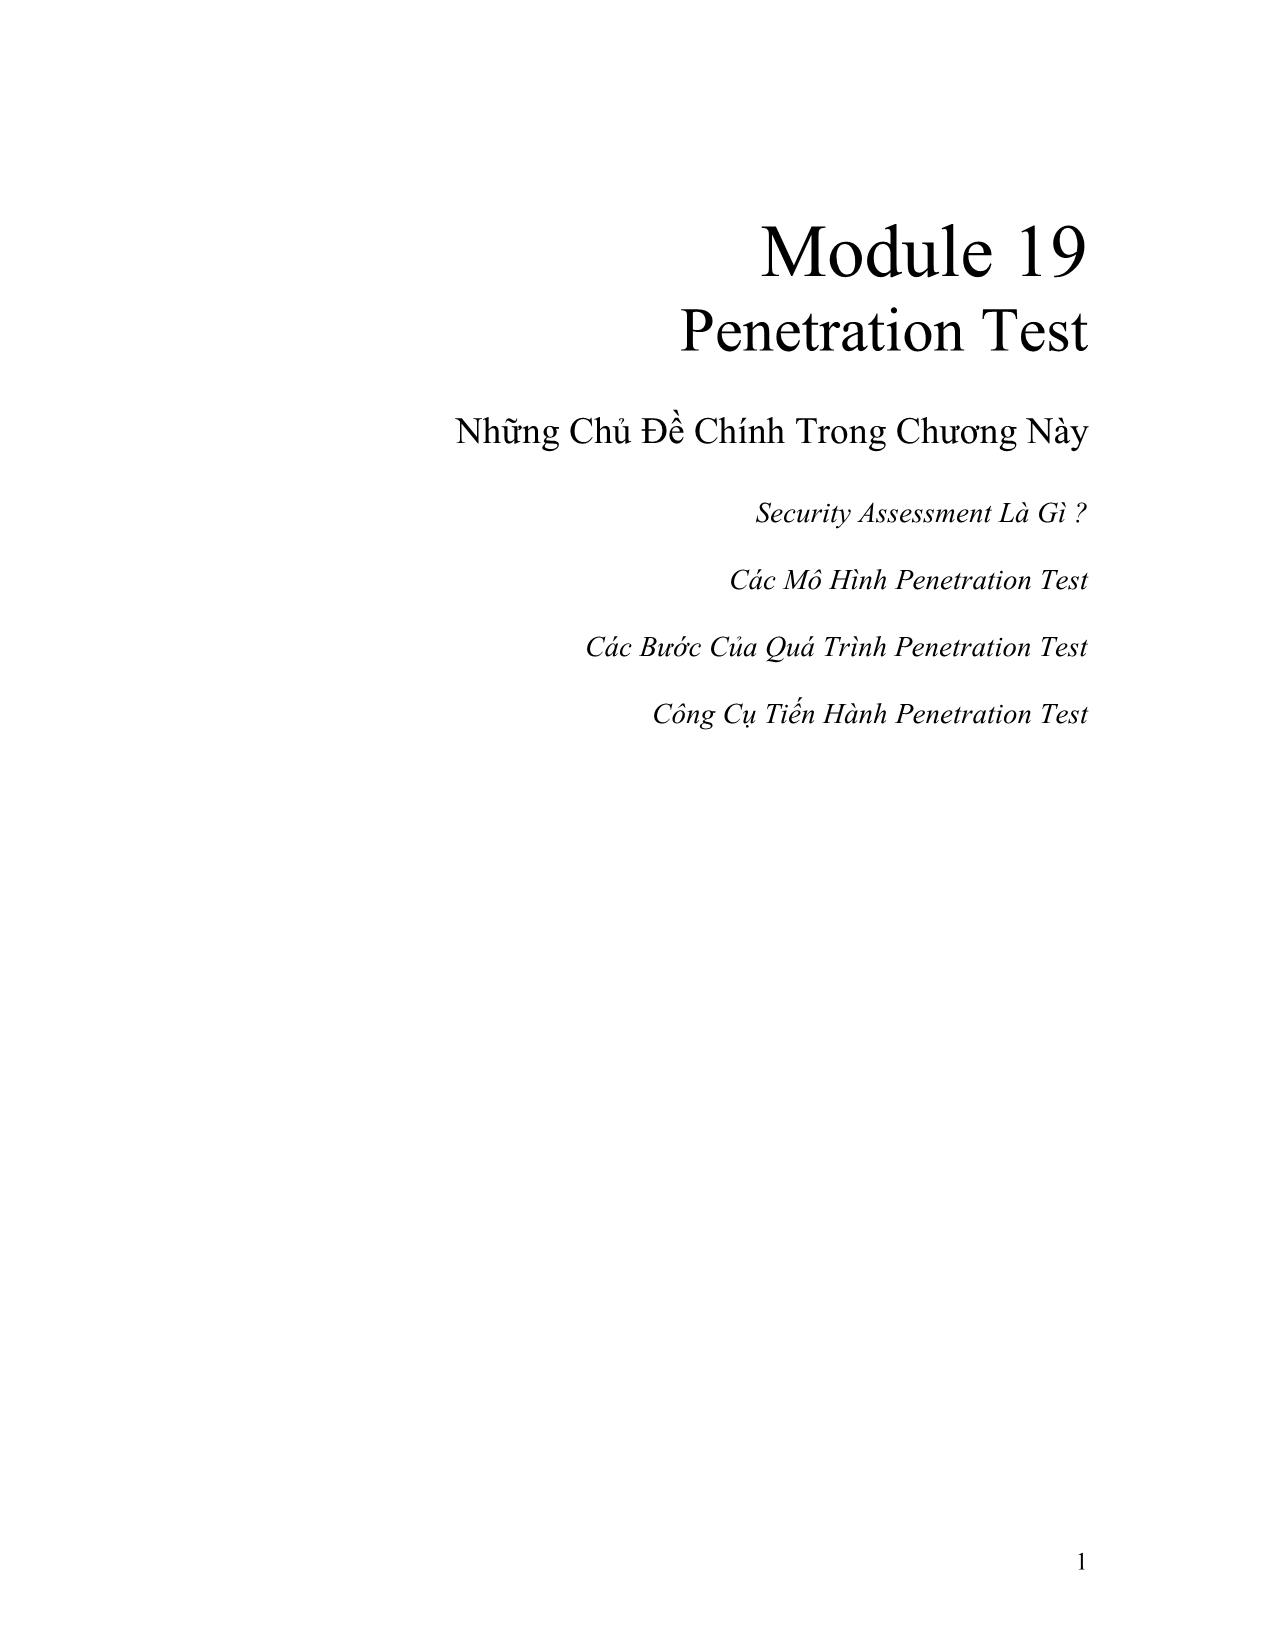 Module 19: Penetration Test trang 1